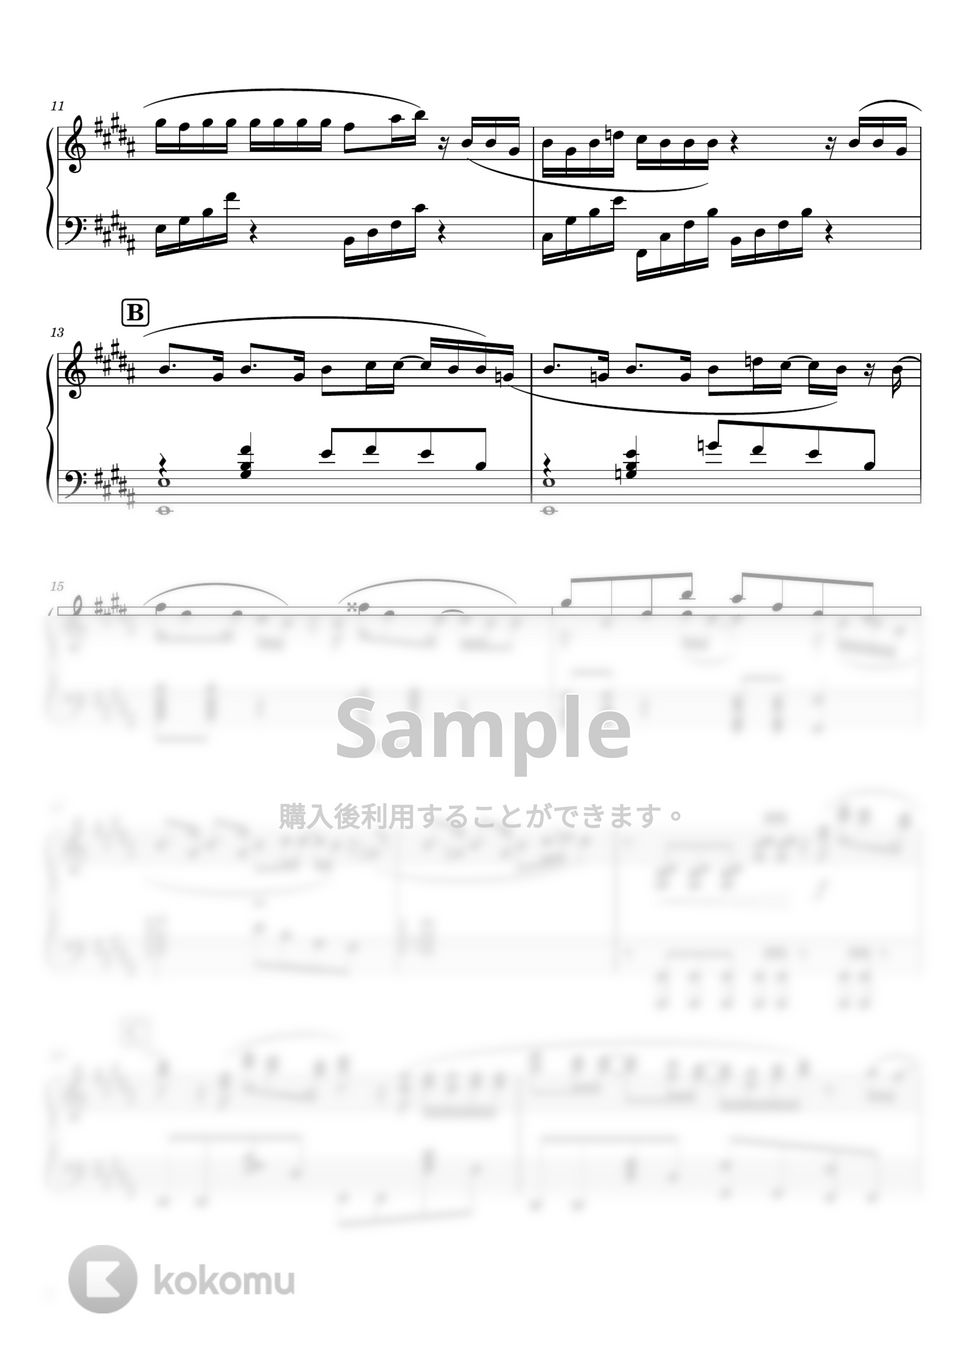 幾田りら - スパークル (ピアノソロ / 中級～上級) by SuperMomoFactory